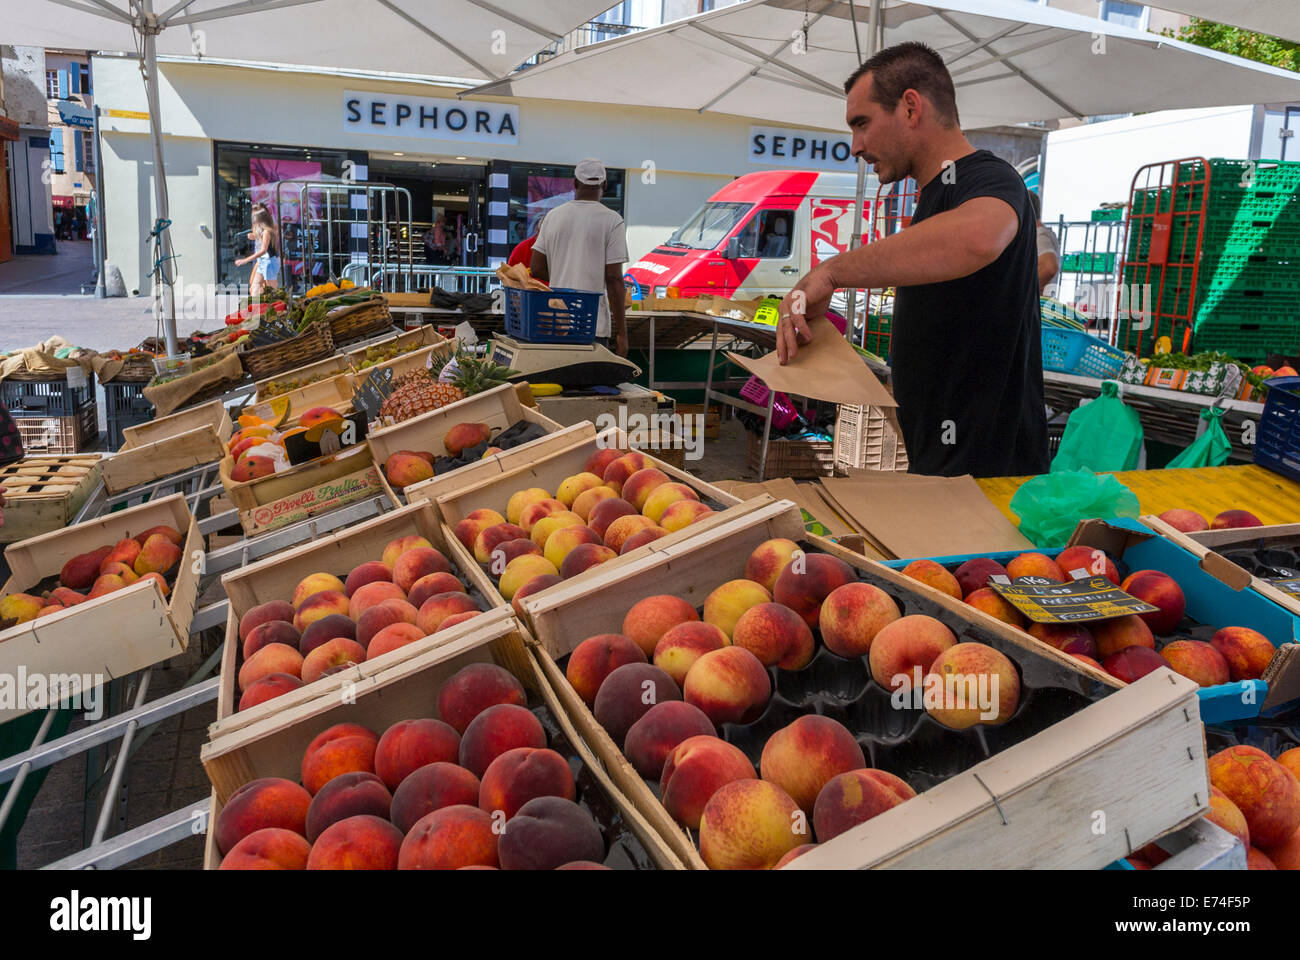 Perpignan, Frankreich, Clerk auf französischen Outdoor-Lebensmittelmärkten, Einkaufen von frischem Obst und Gemüse, lokaler Konsum Stockfoto